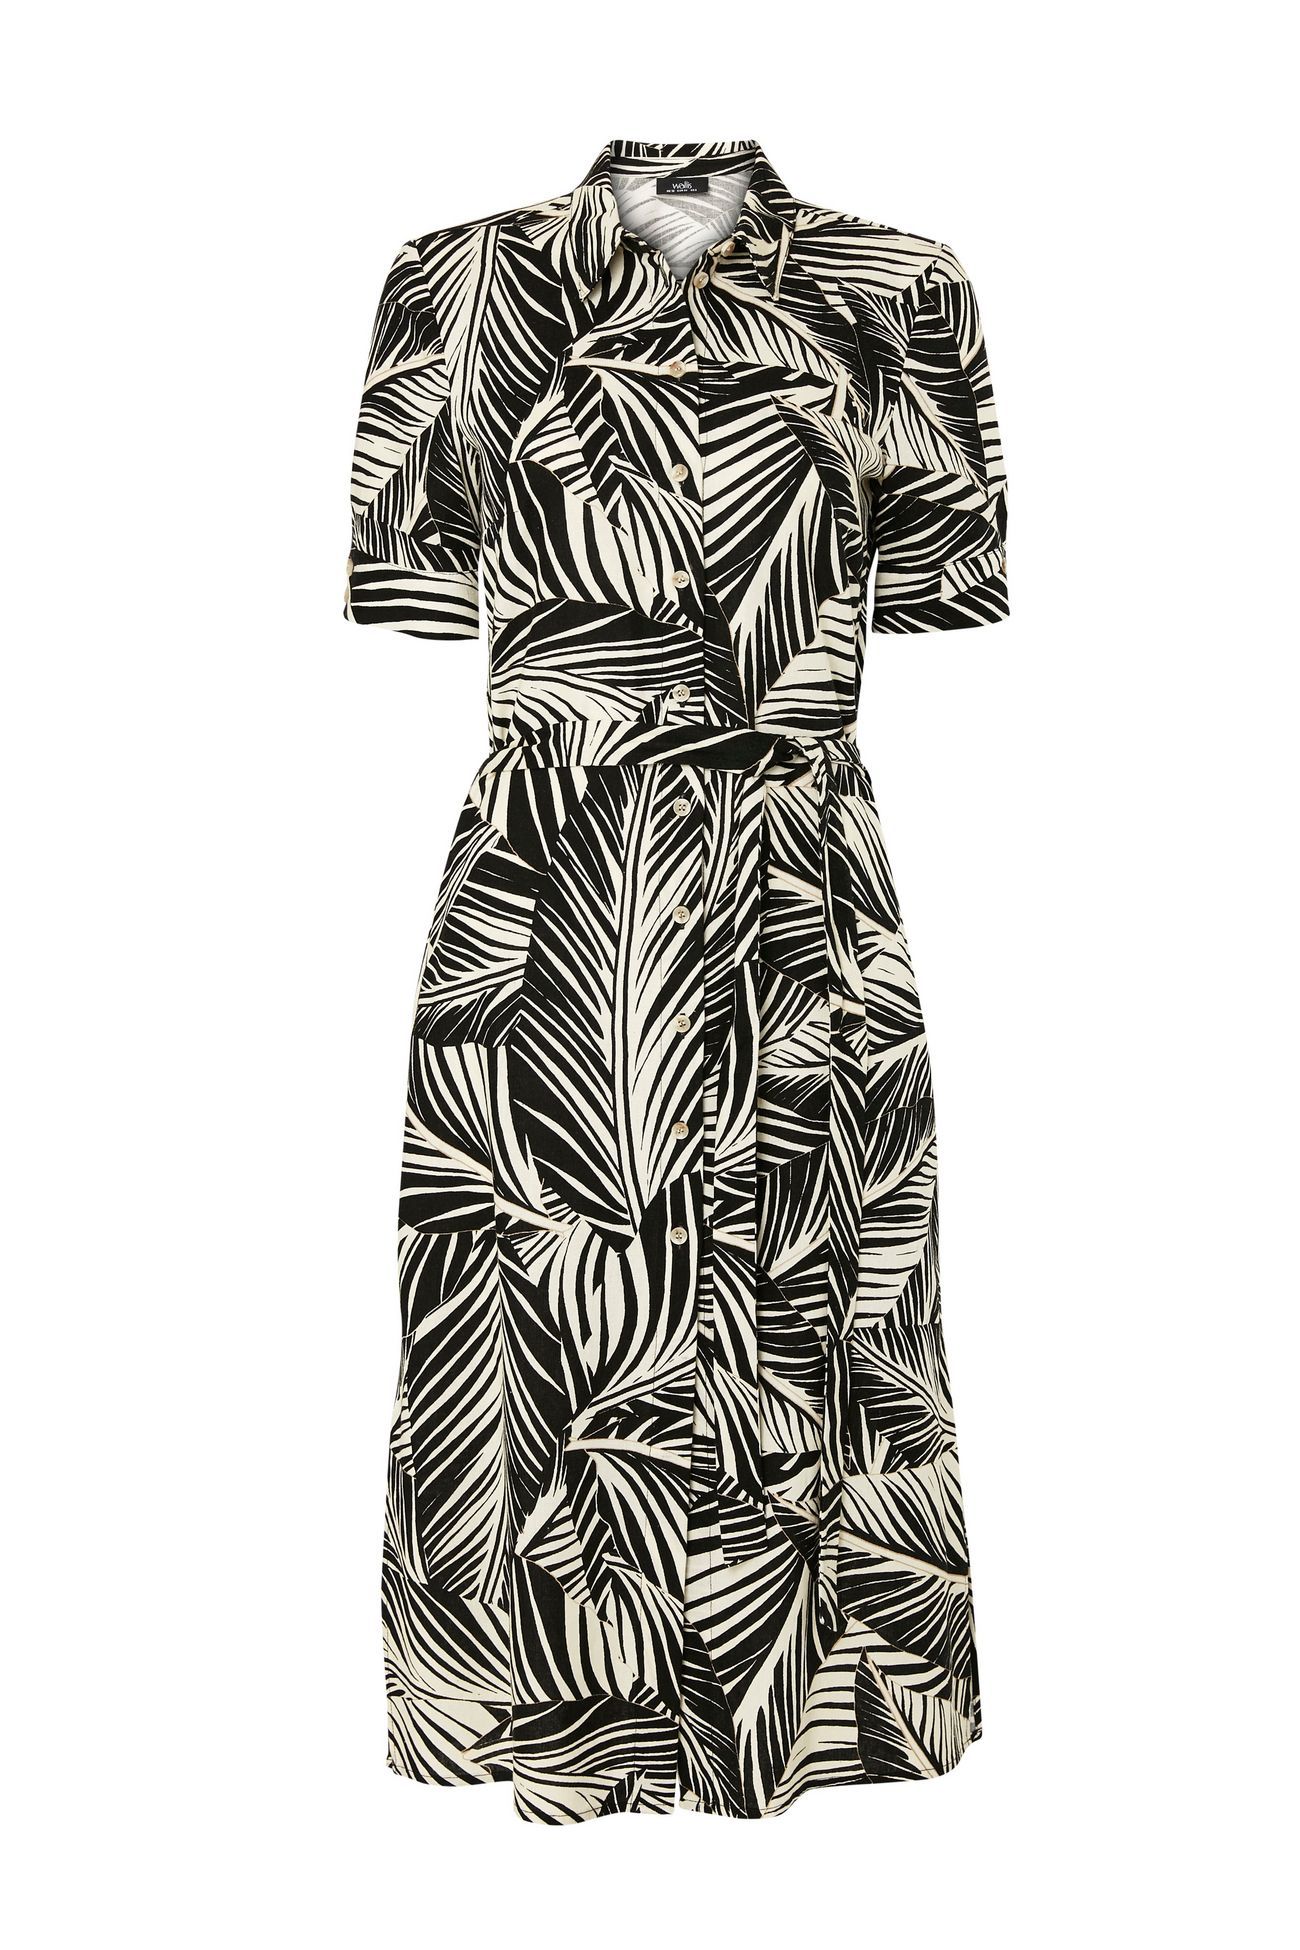 18 tropical-print shirt dress from Wallis